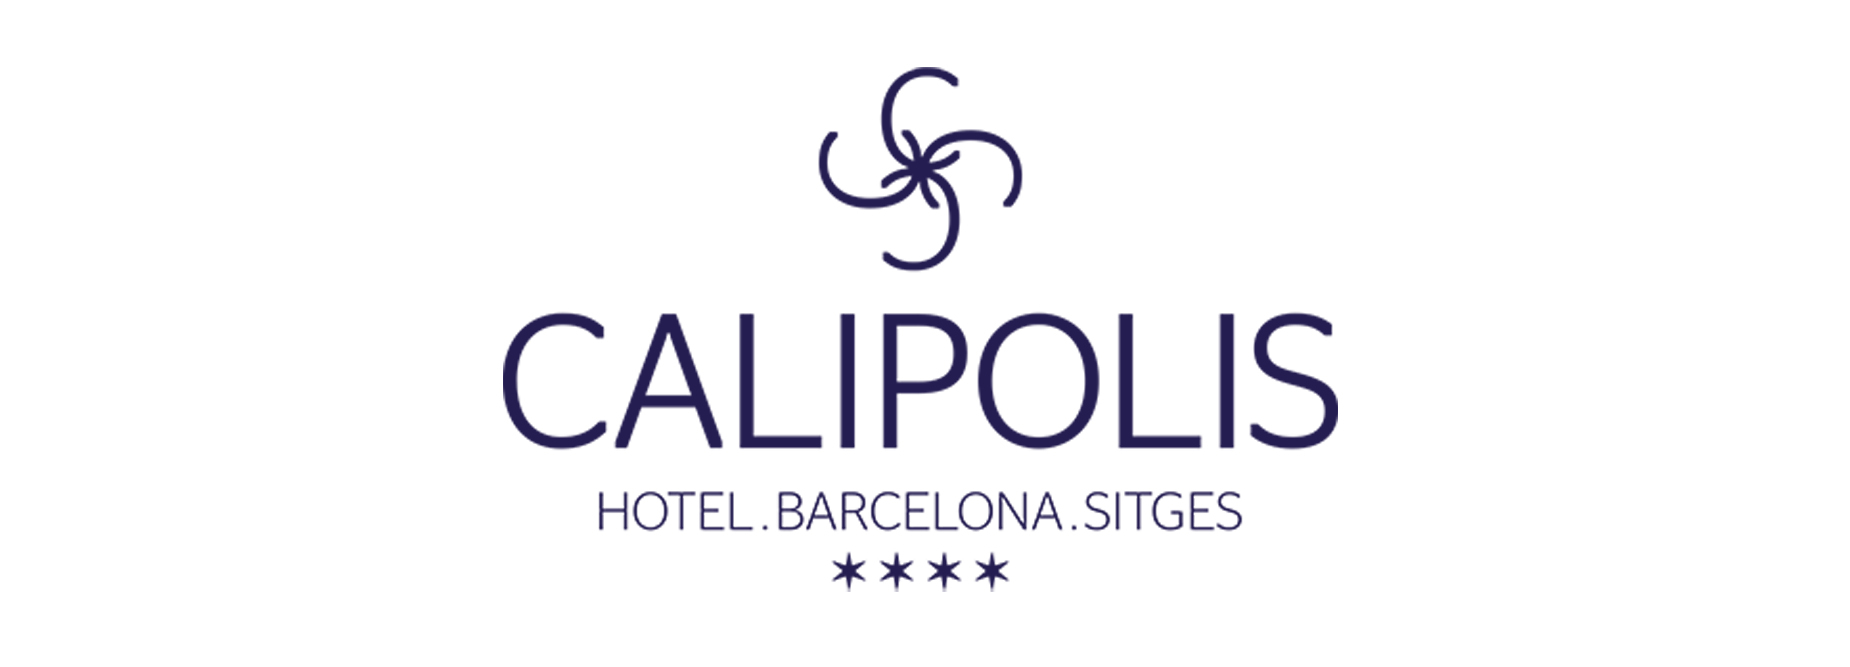 hotel calipolis lp